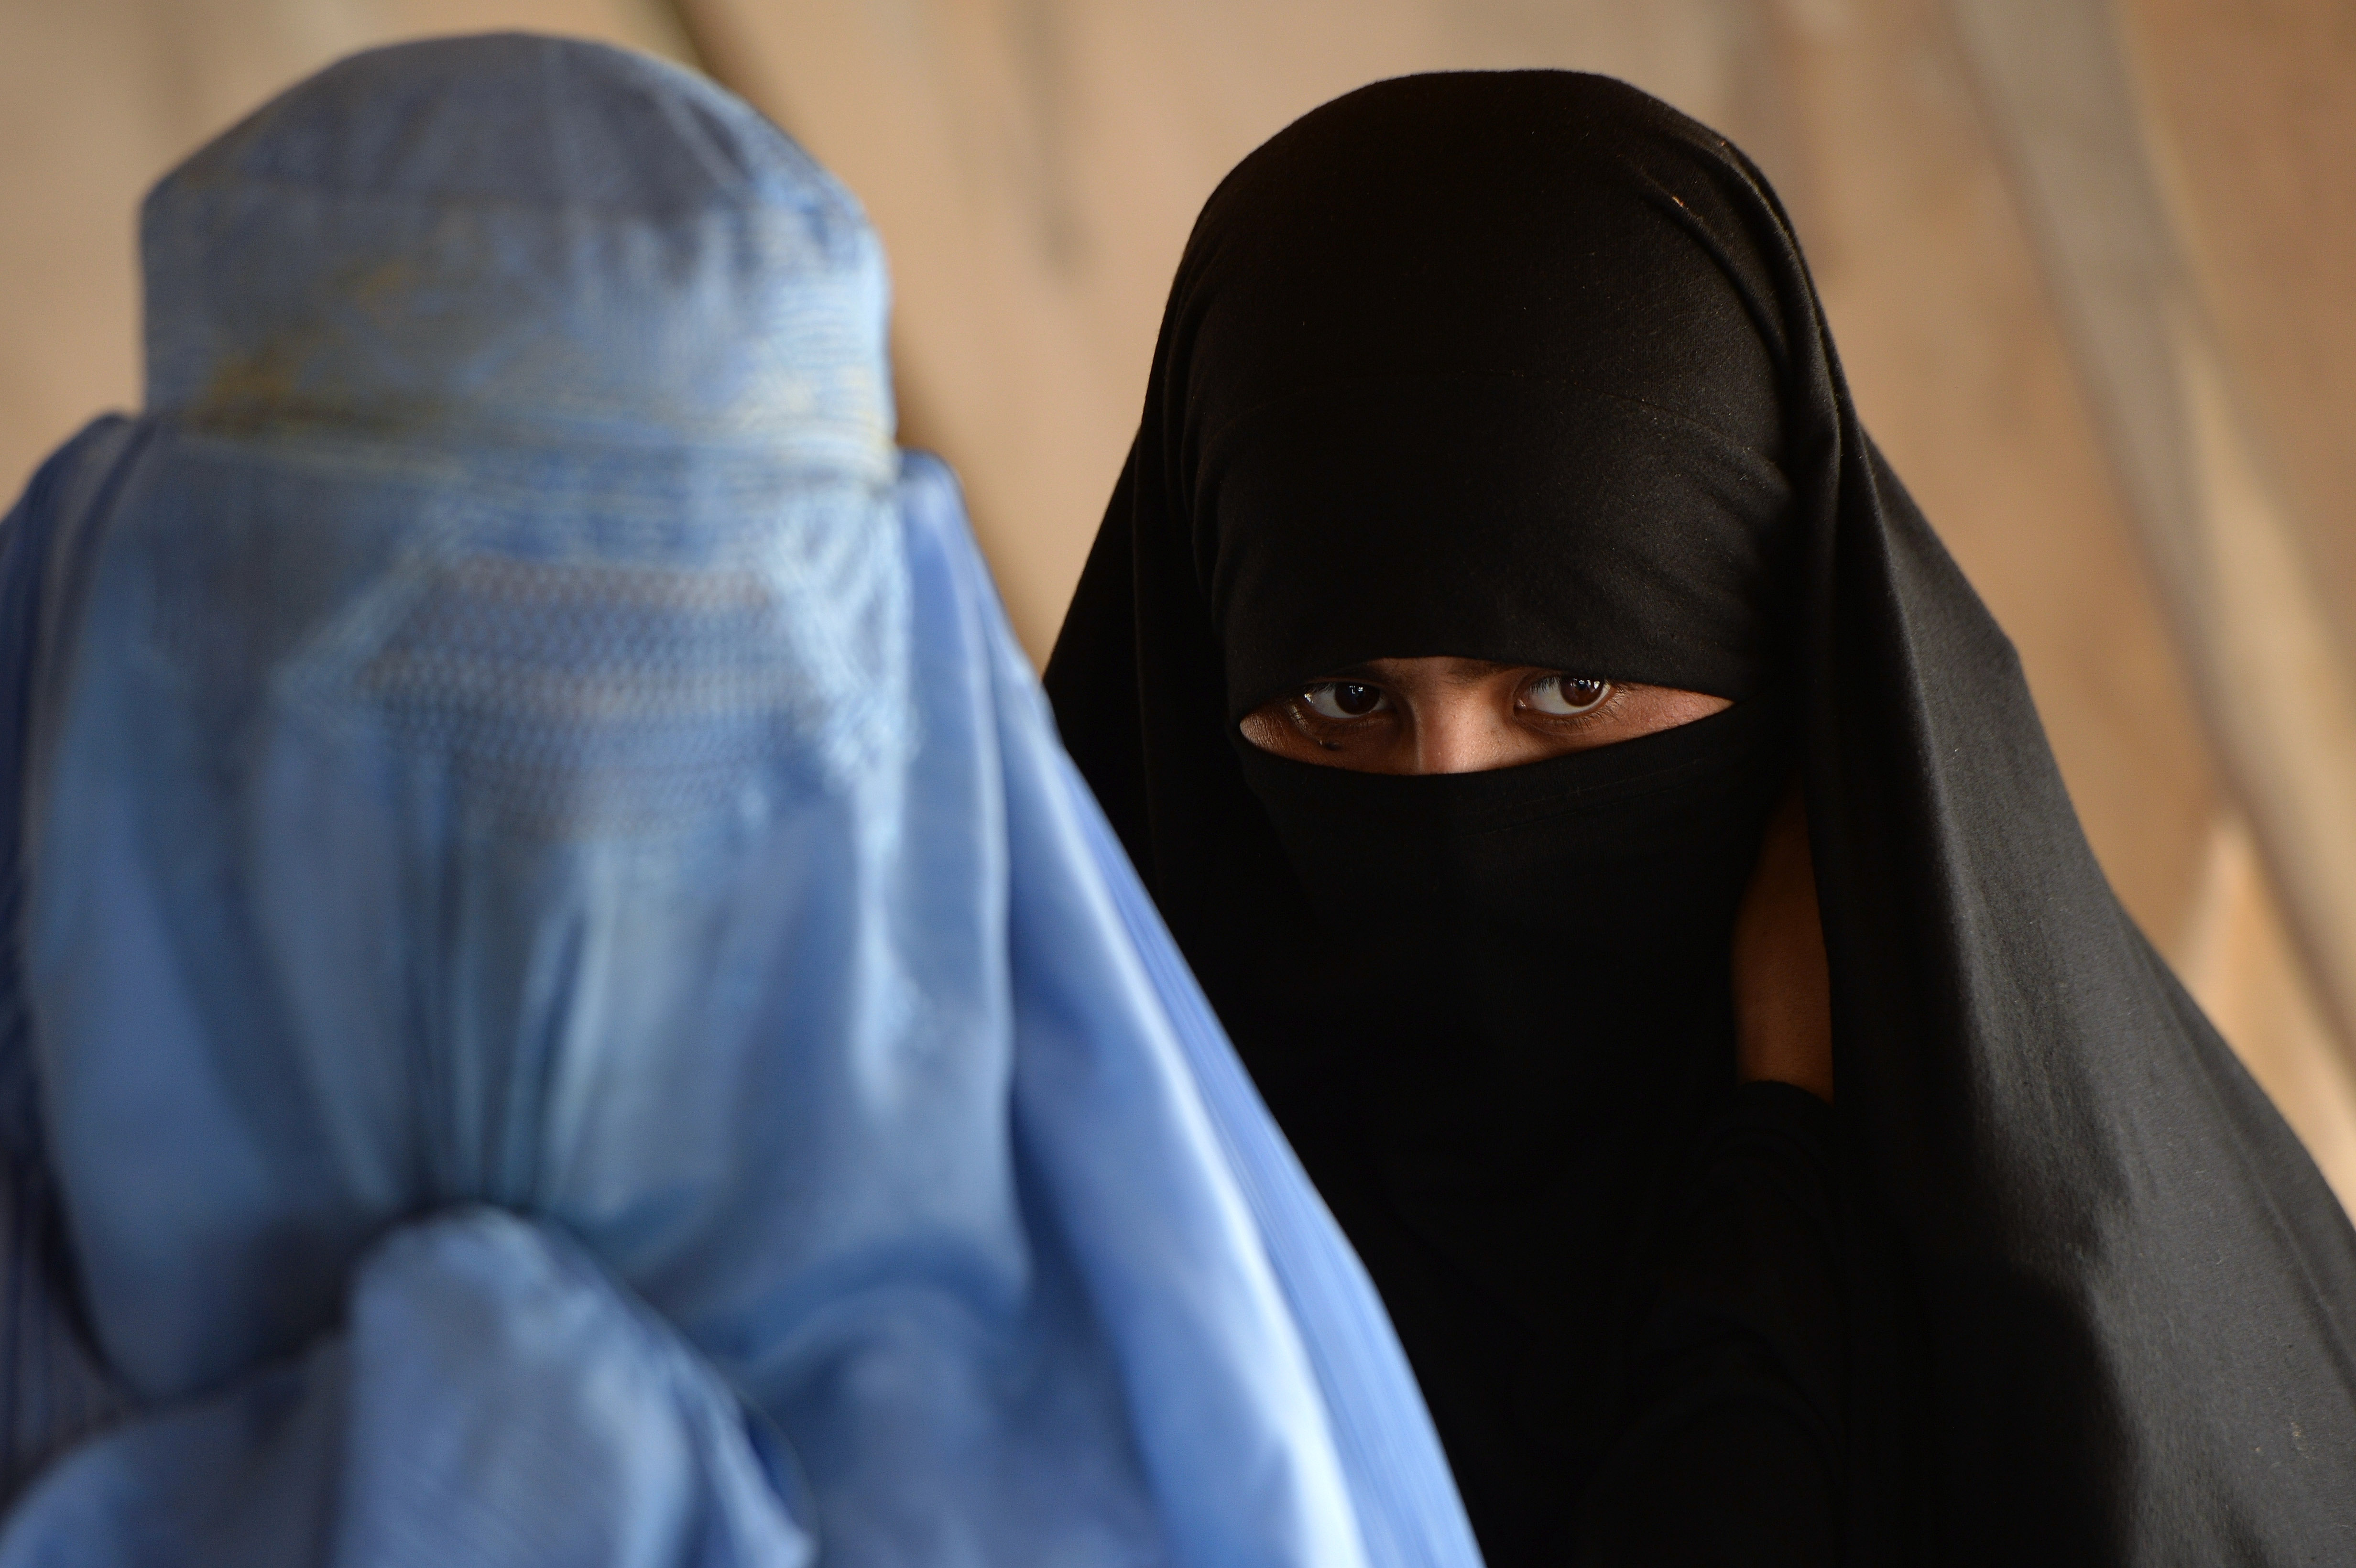 Marokko verbietet Burka: Händler sollen Burkas verbrennen und haben 48 Stunden Zeit